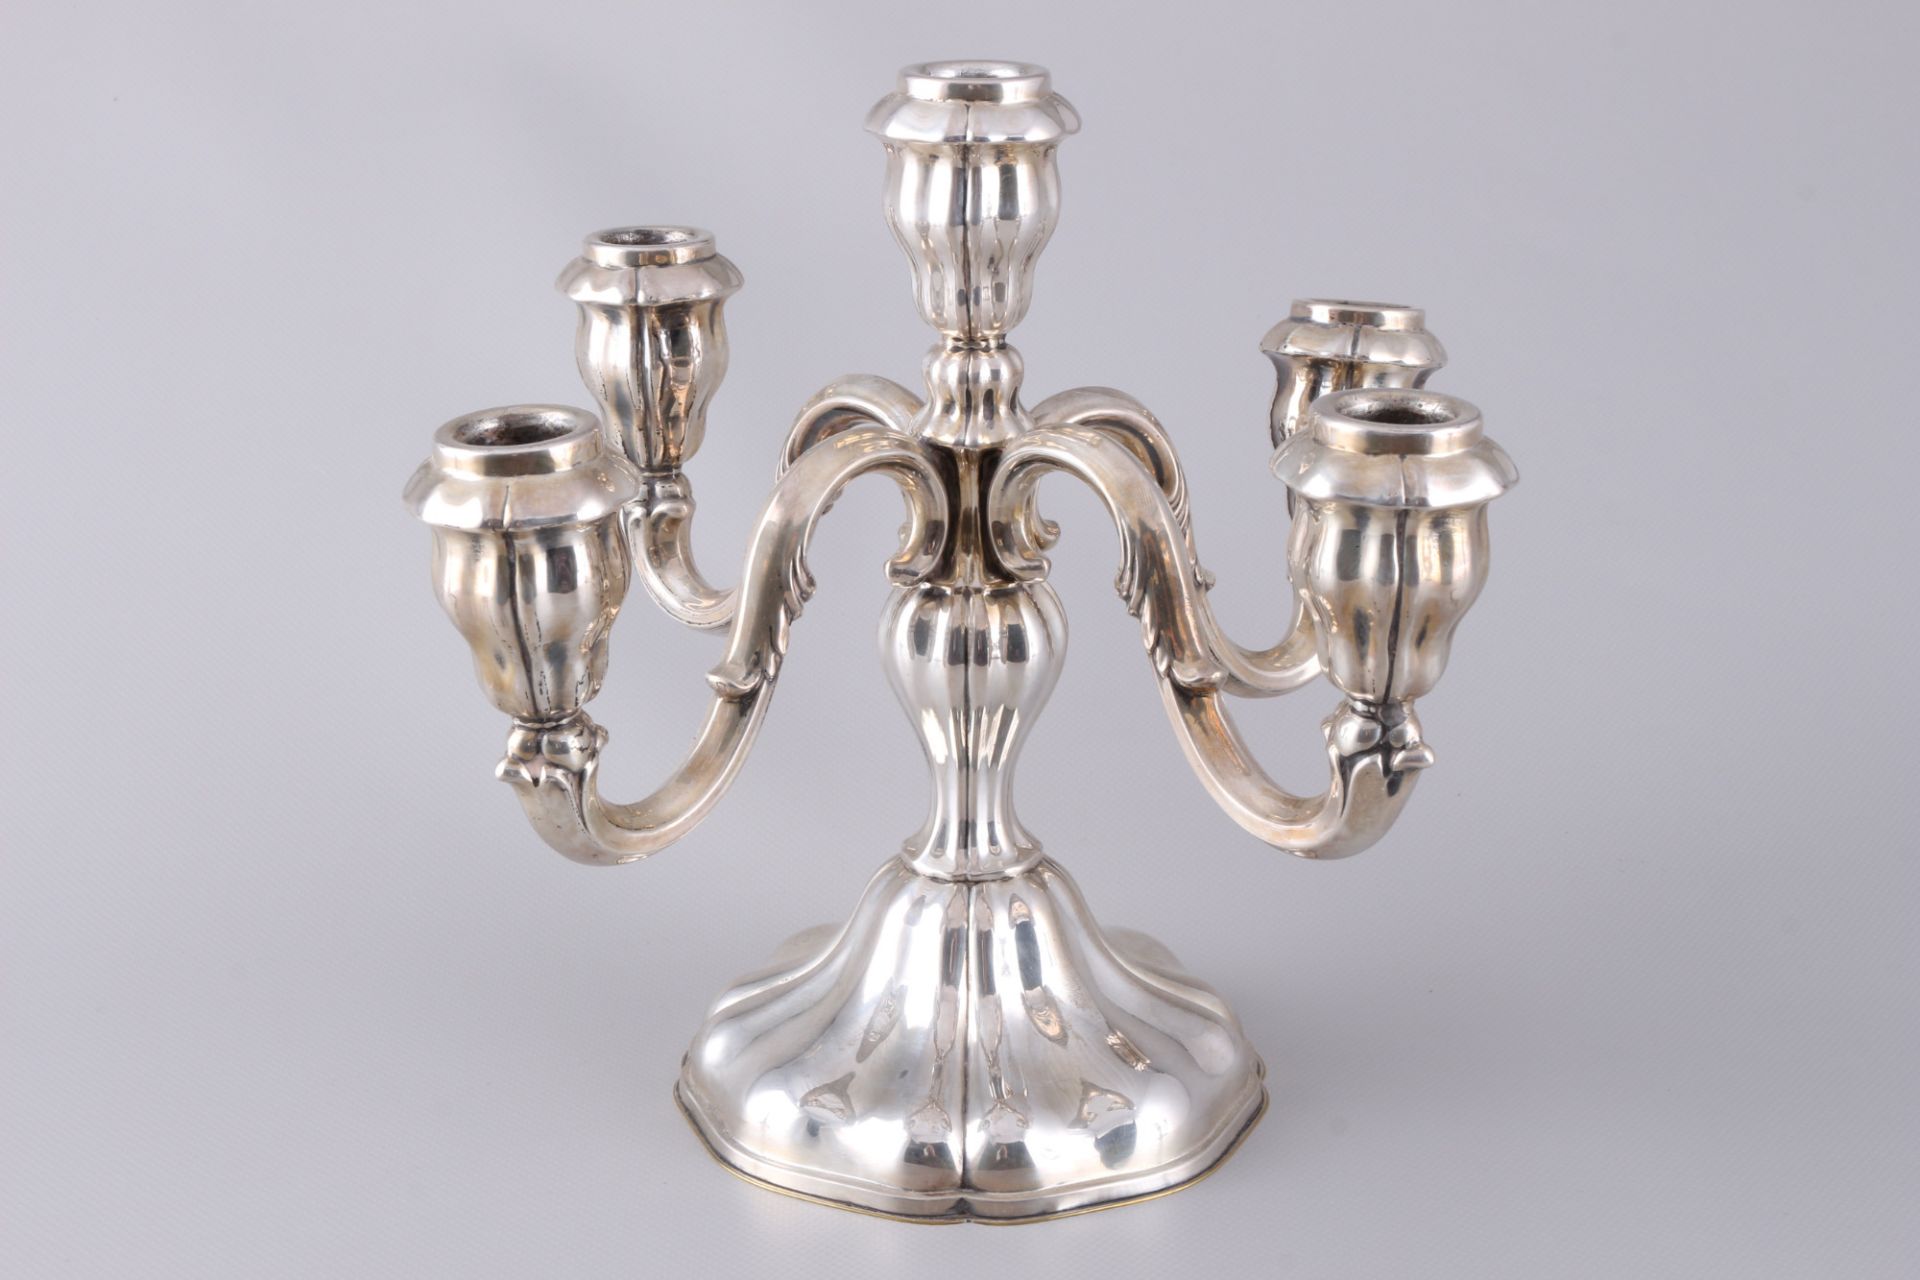 800 - 835 silver 3 candlesticks, included Grimminger & Gebr. Deyhle, Silber Kerzenleuchter - Image 3 of 6